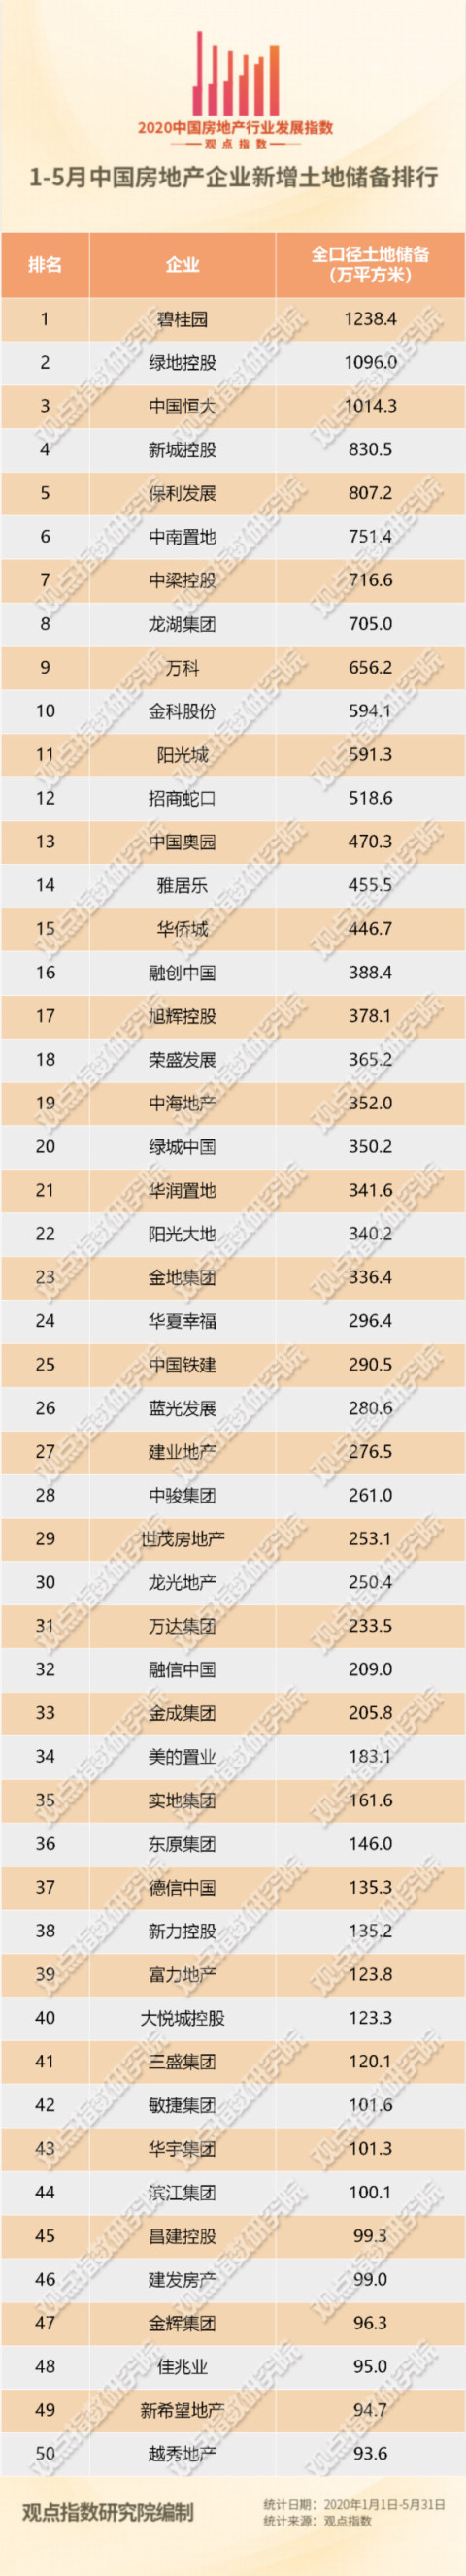 1-5月中国房企新增土地储备报告·观点月度指数